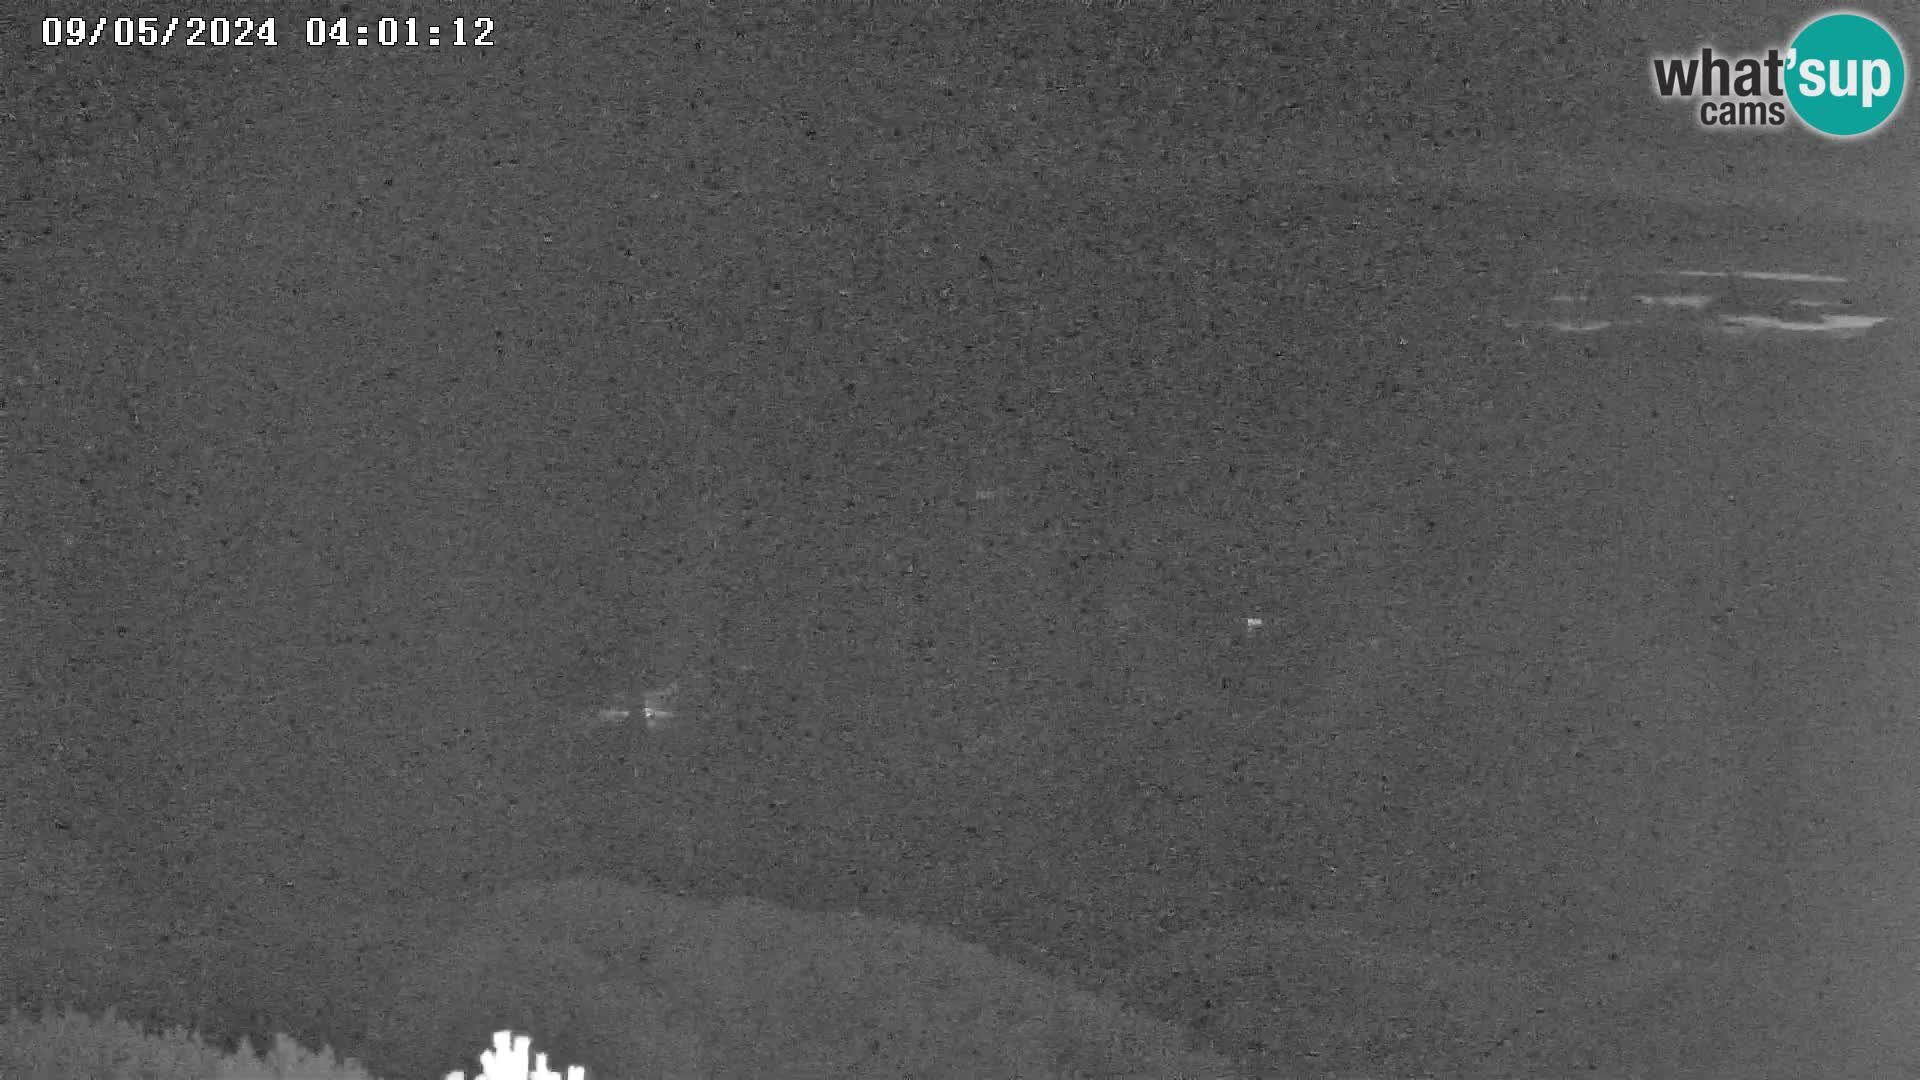 Stazione sciistica Vogel webcam Panorama dalla Orlova glave verso il Triglav